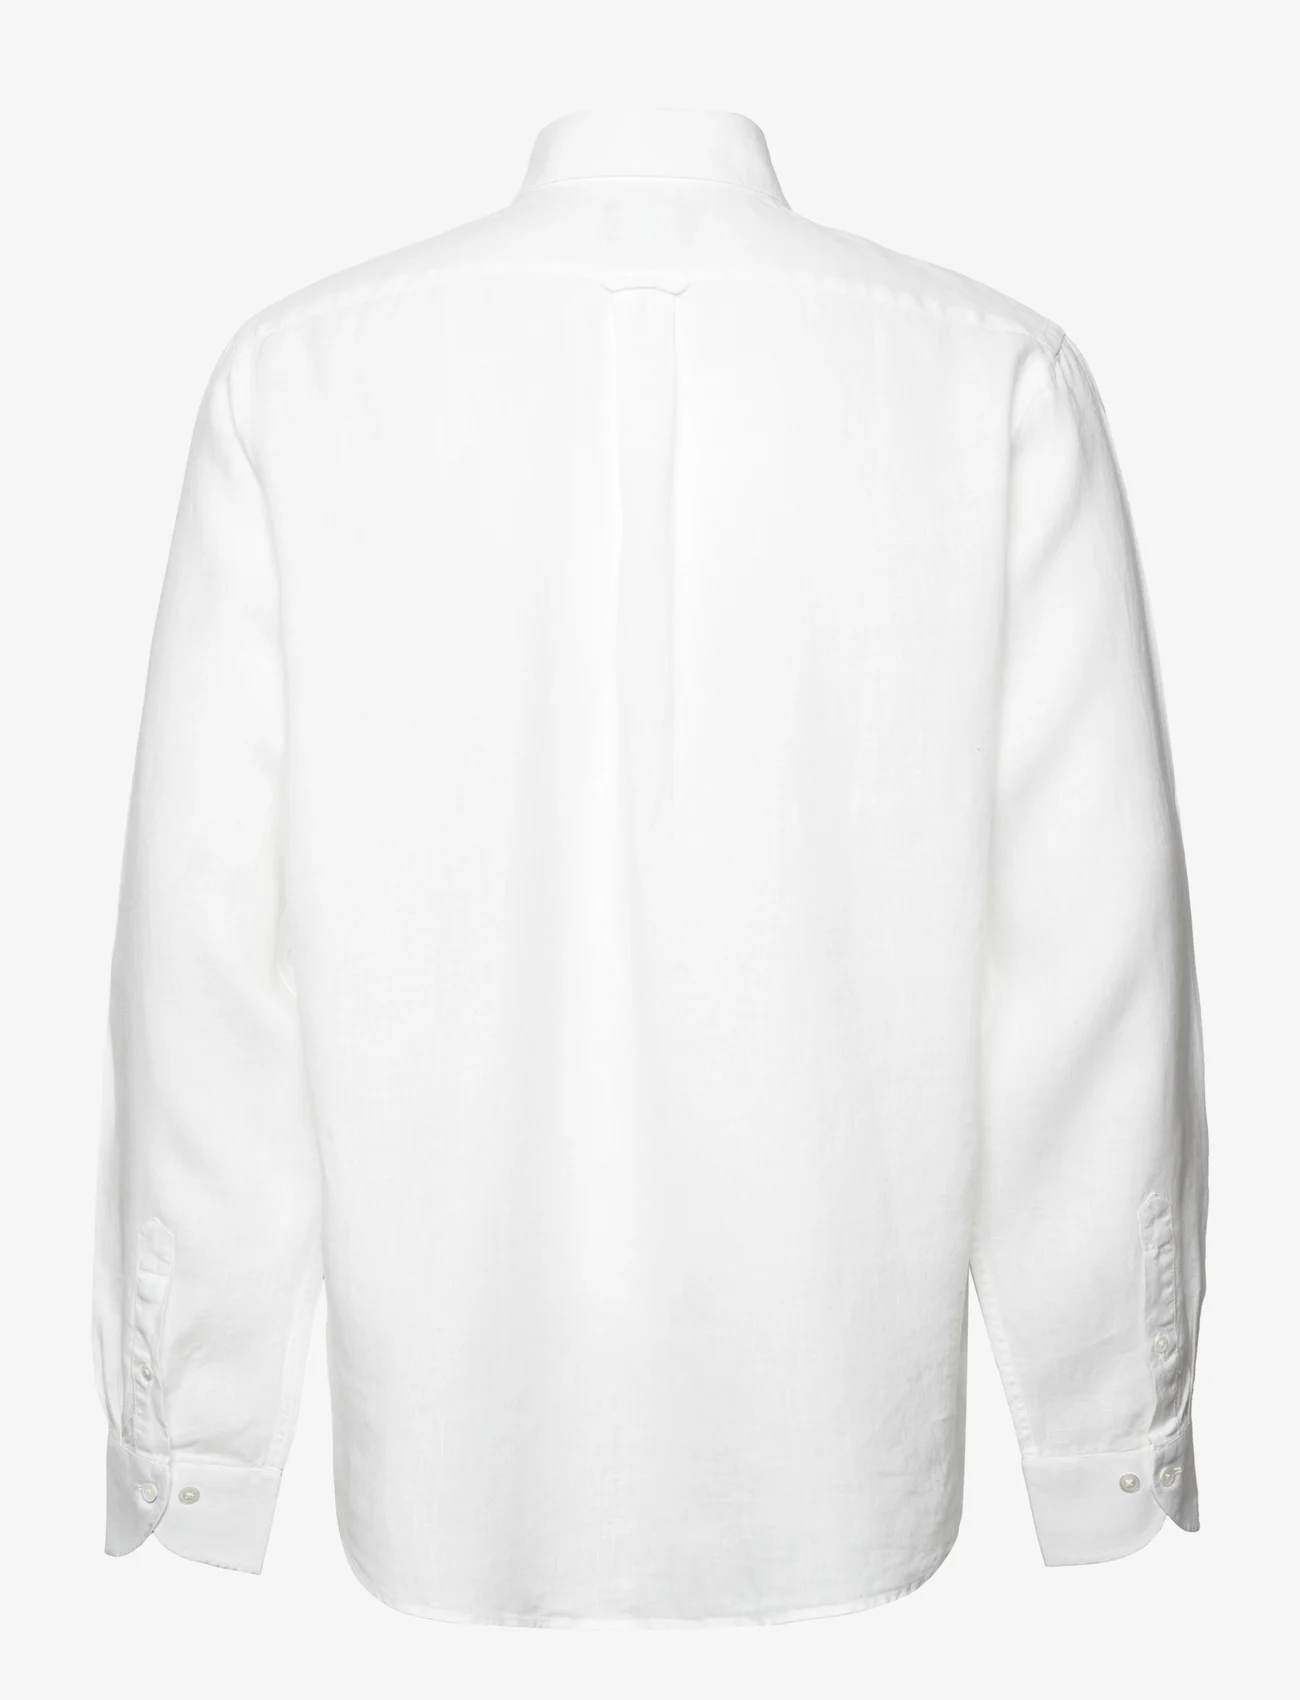 SIR of Sweden - Jerry Shirt - linen shirts - white - 1